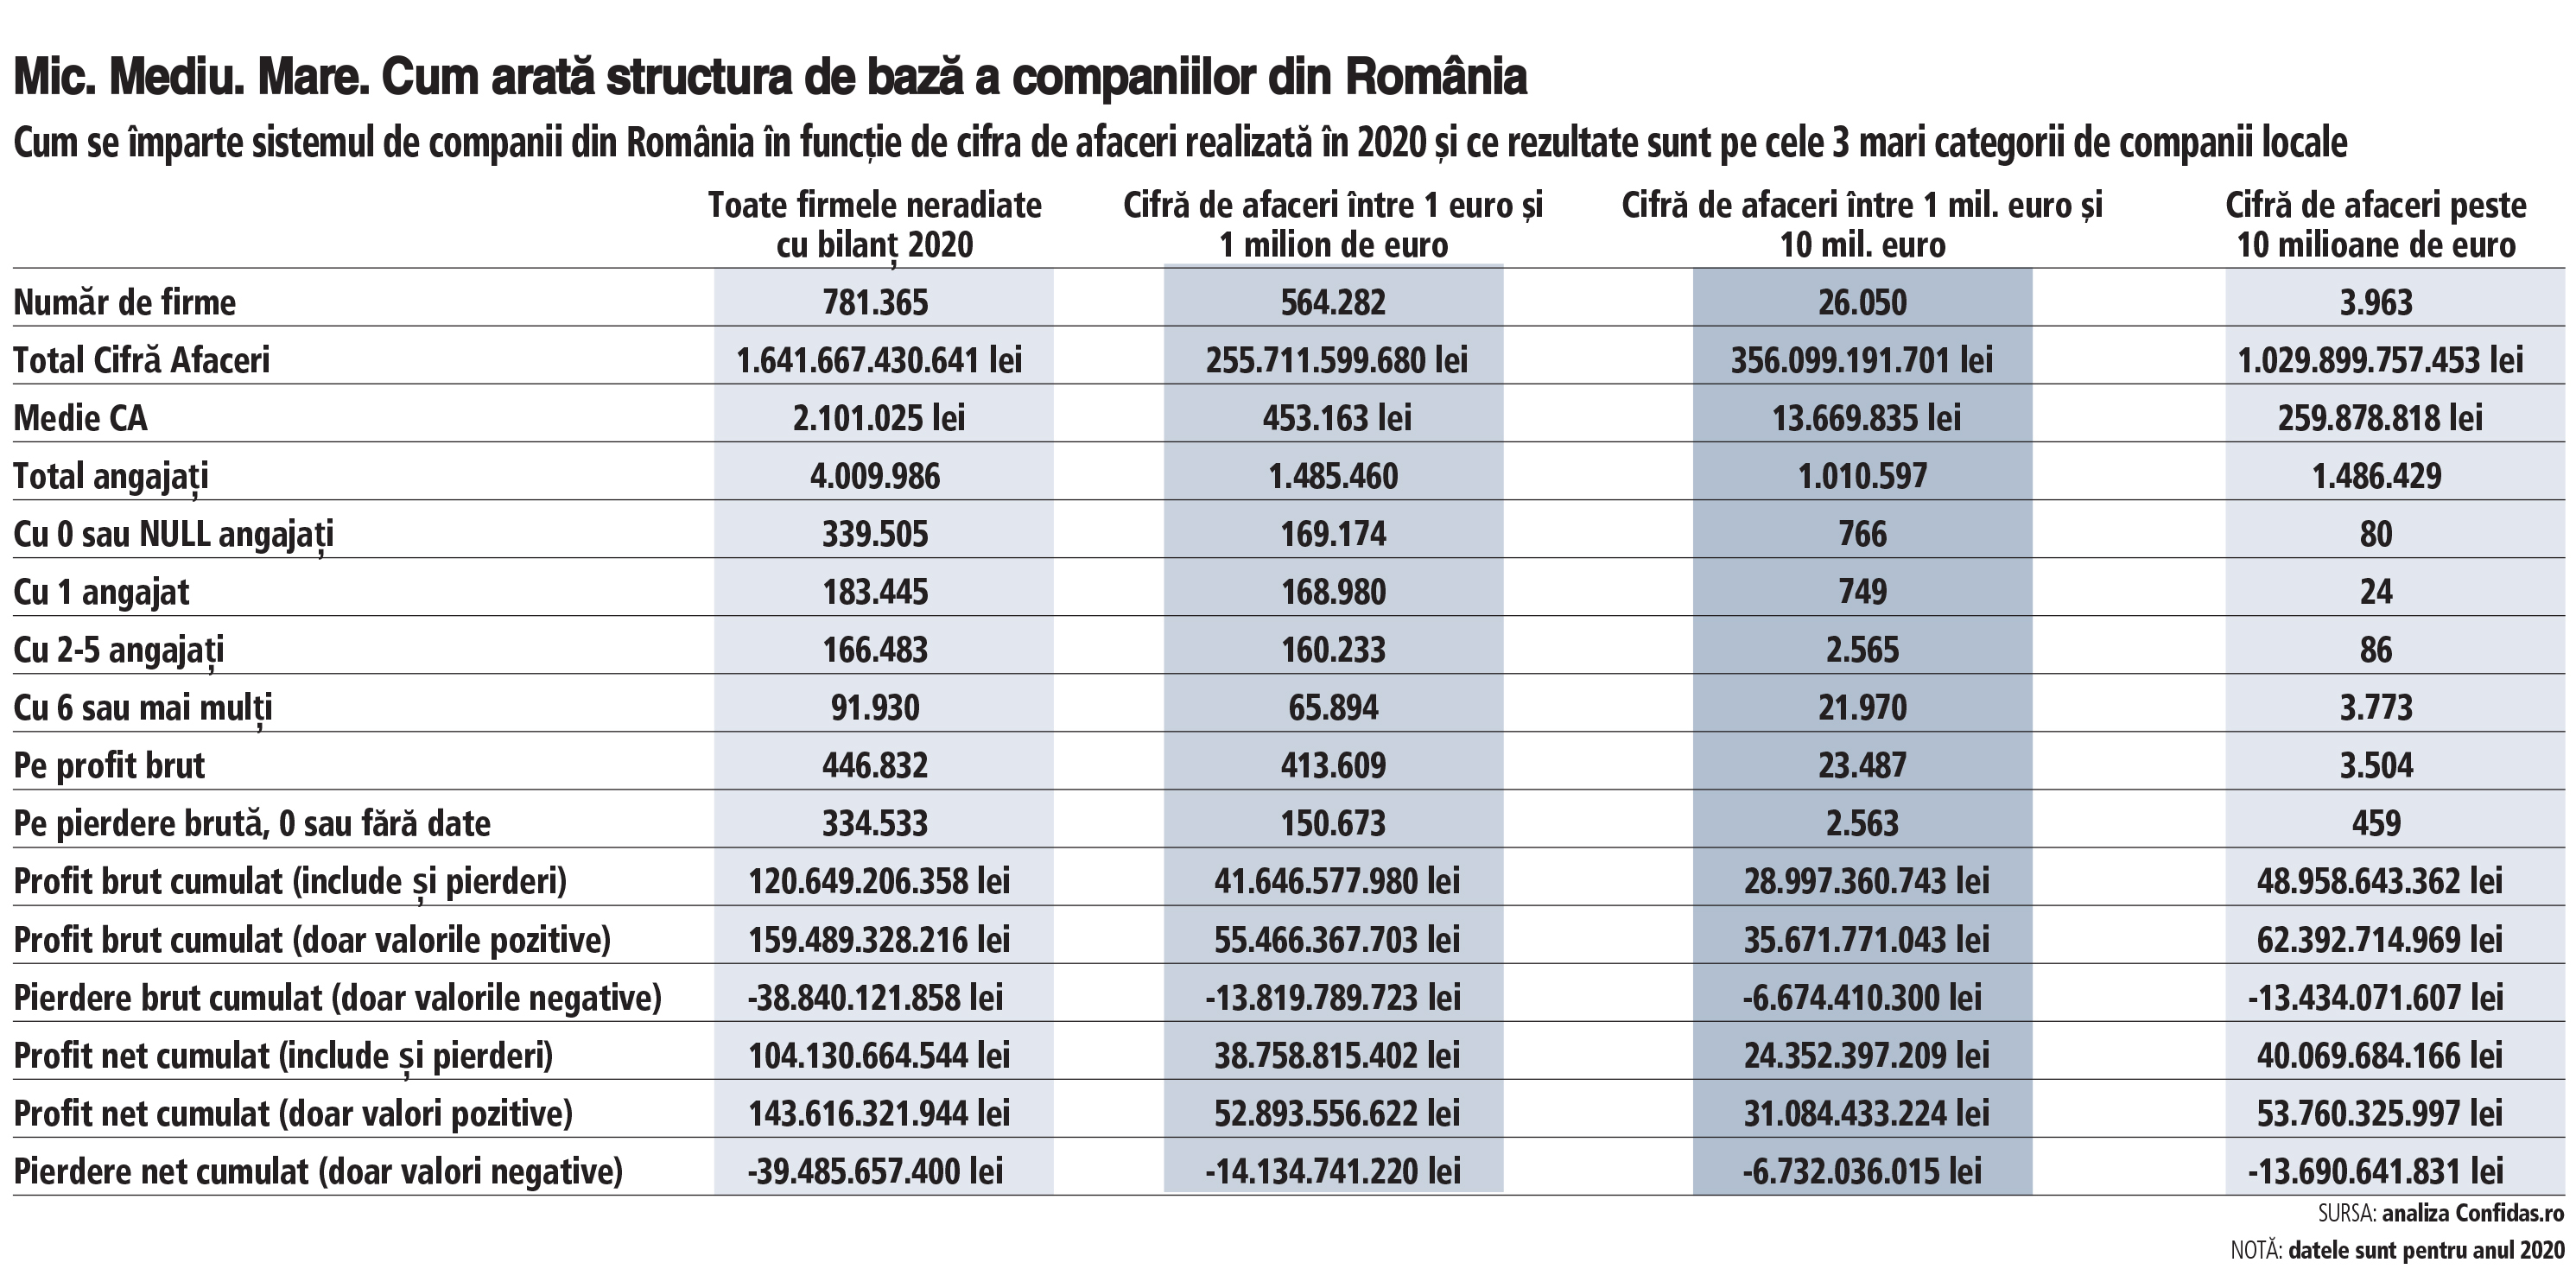 Mic. Mare. Cât fiecare companie în businessul românesc? Micii antreprenori generează profit anual